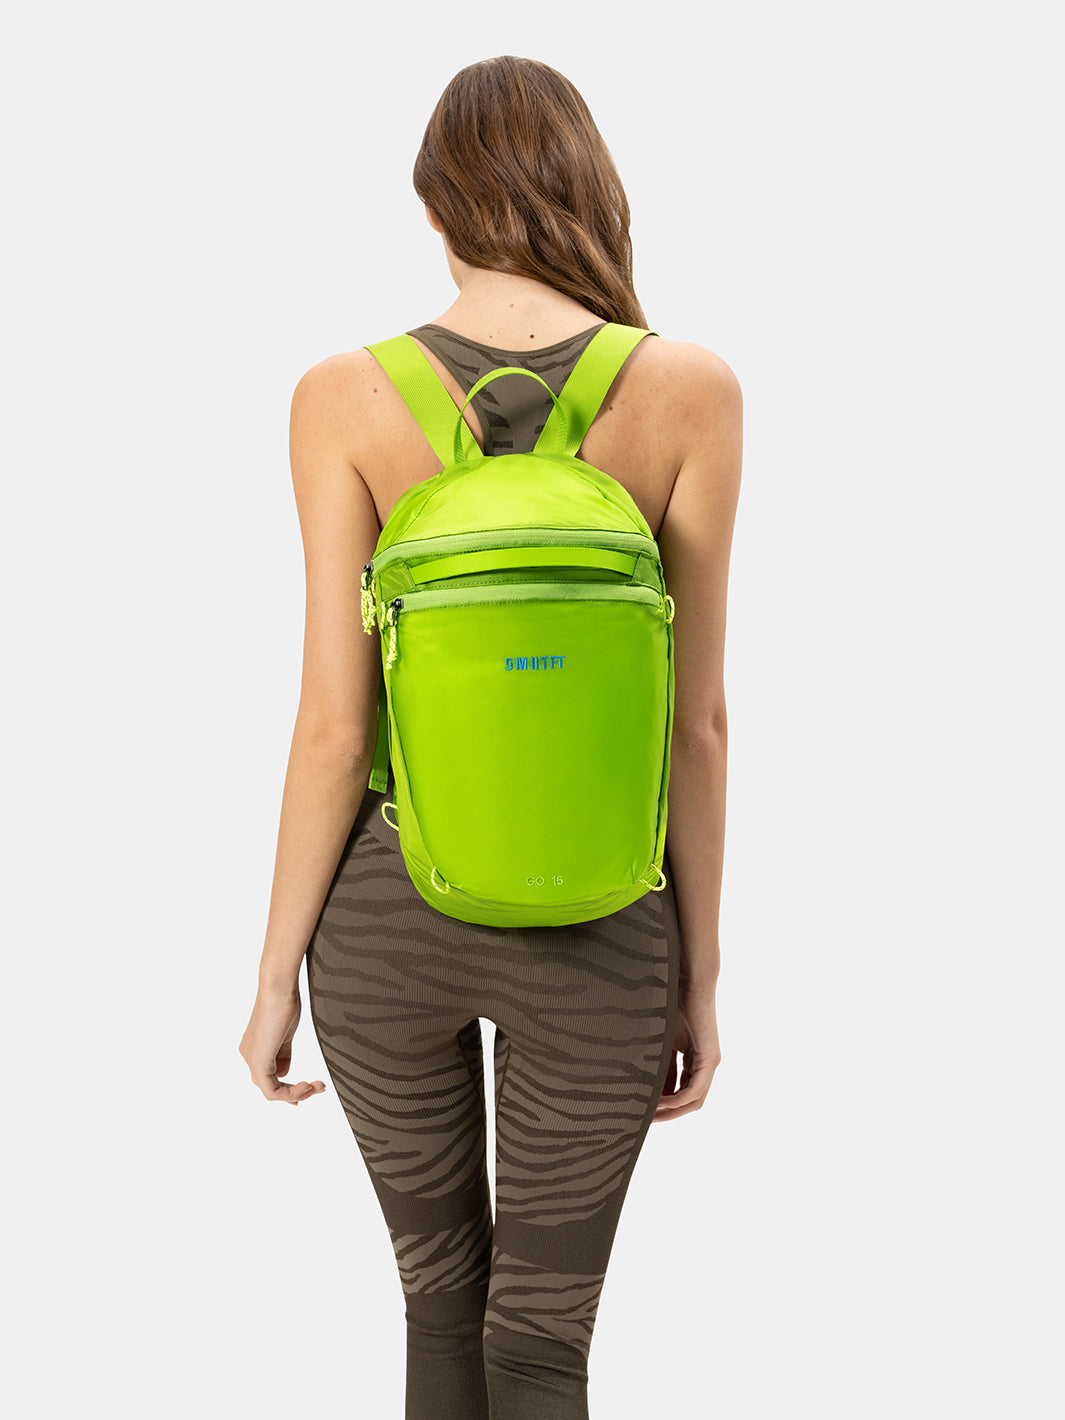 Green Backpacks For Women At SMRTFT